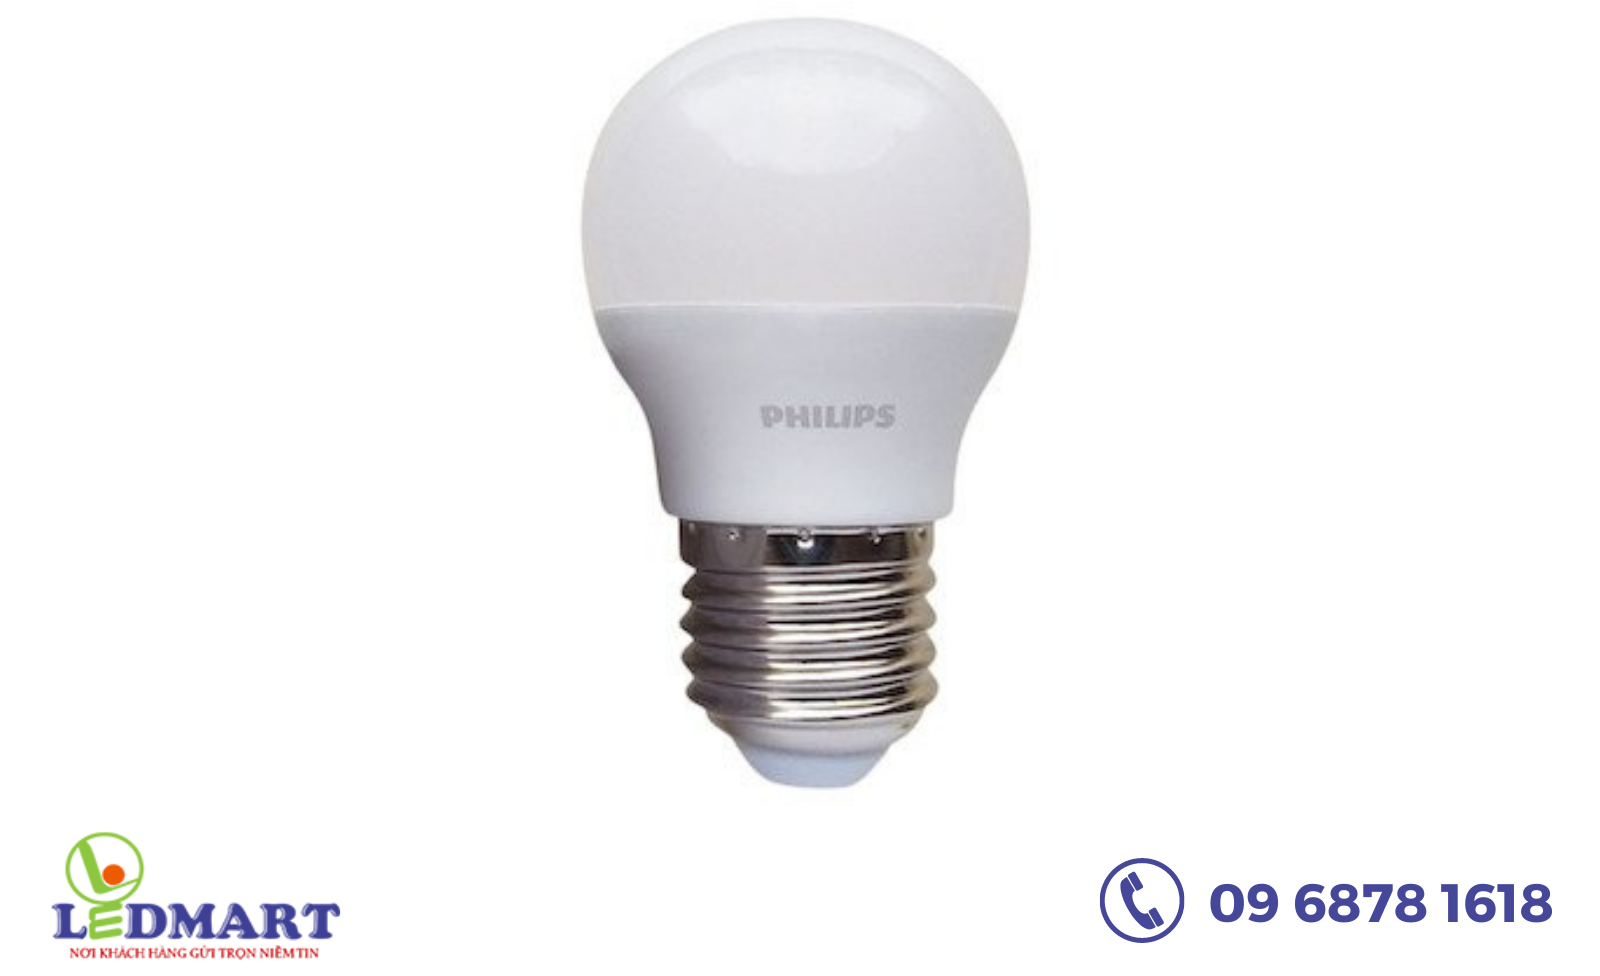 Đèn LED Philips giúp tiết kiệm điện năng